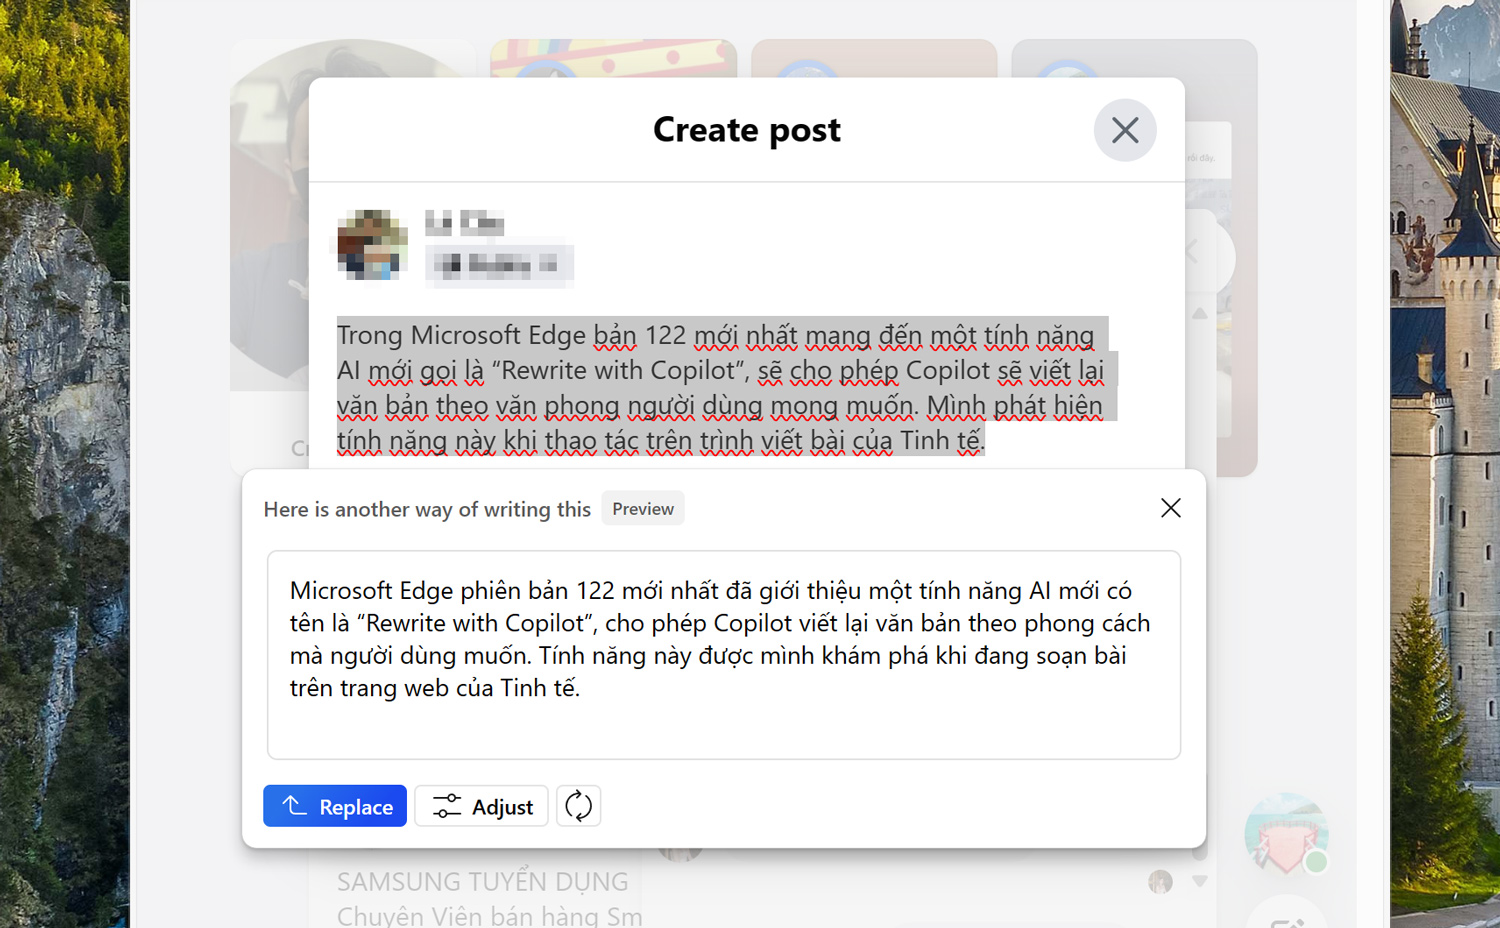 Tính năng mới Microsoft Edge 122: Dùng AI để thay đổi văn phong câu